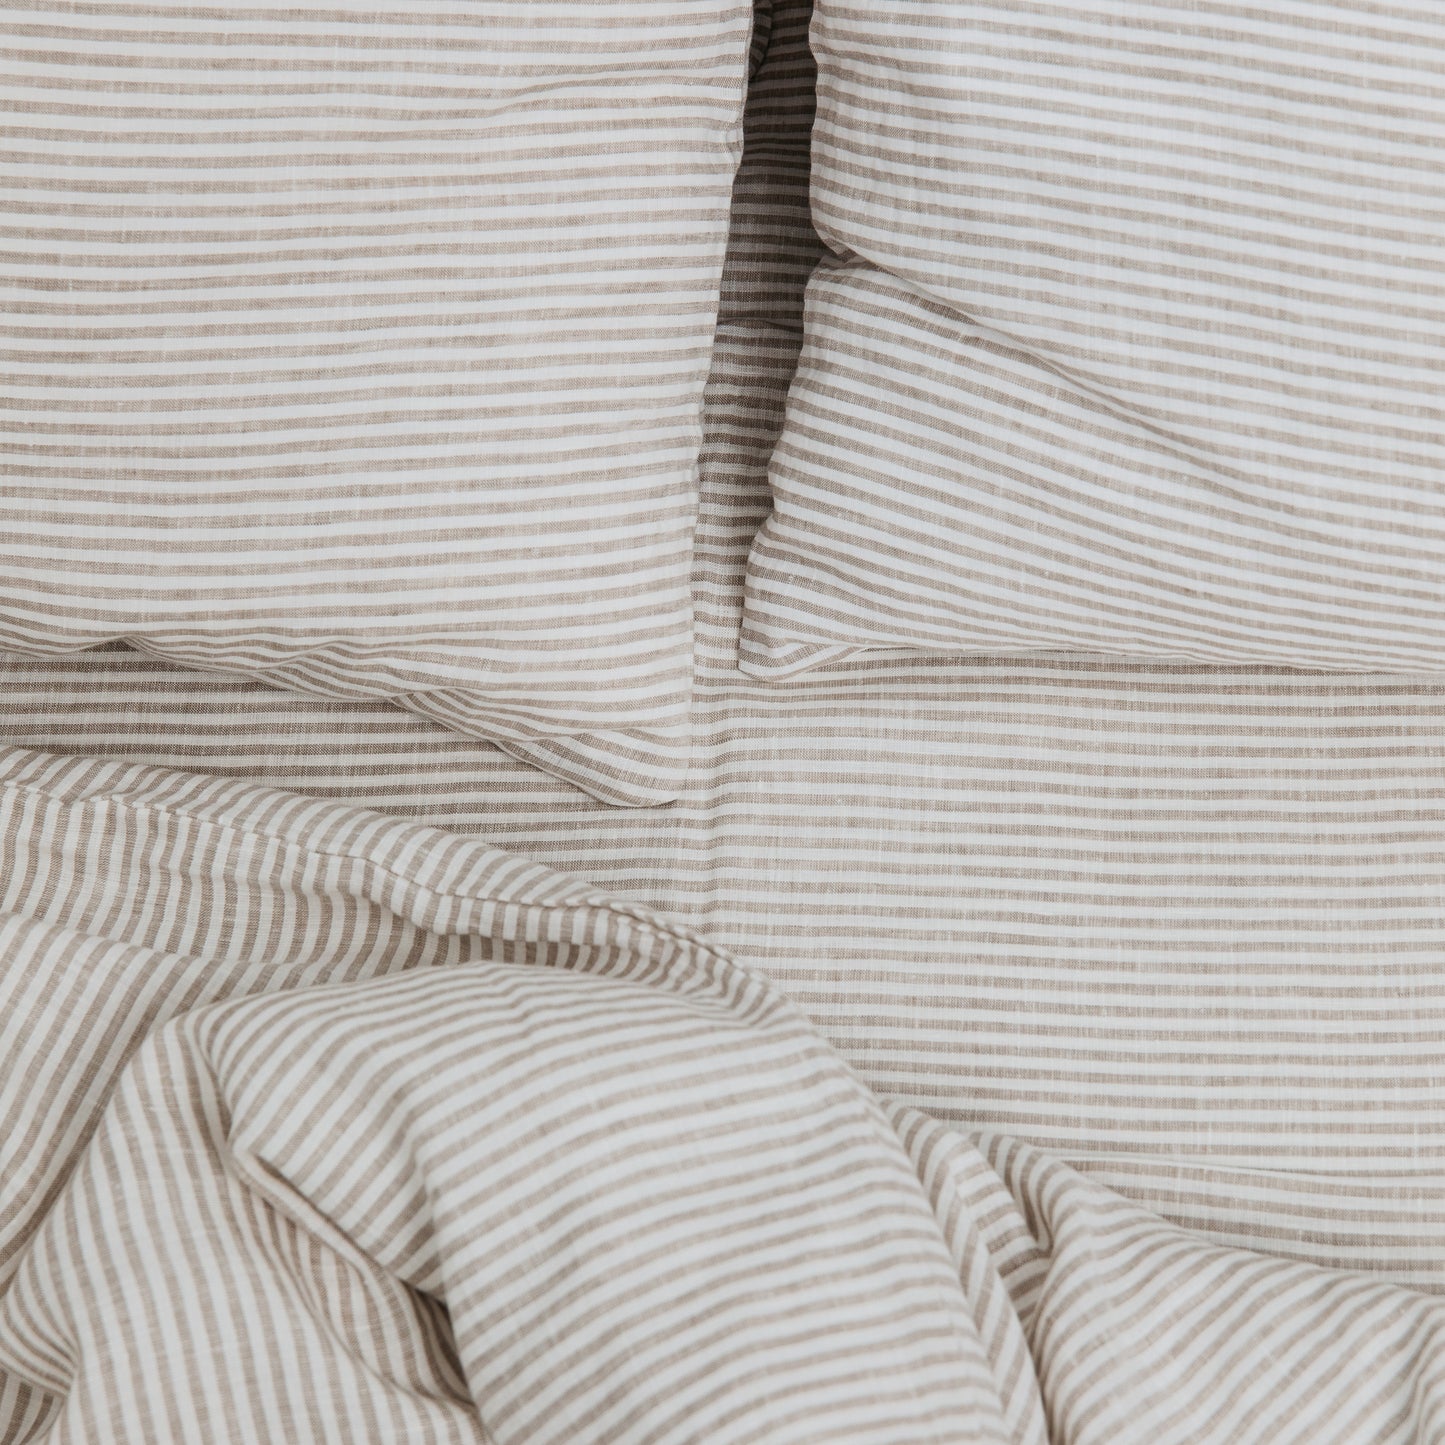 Linen Duvet Cover in Beige Striped